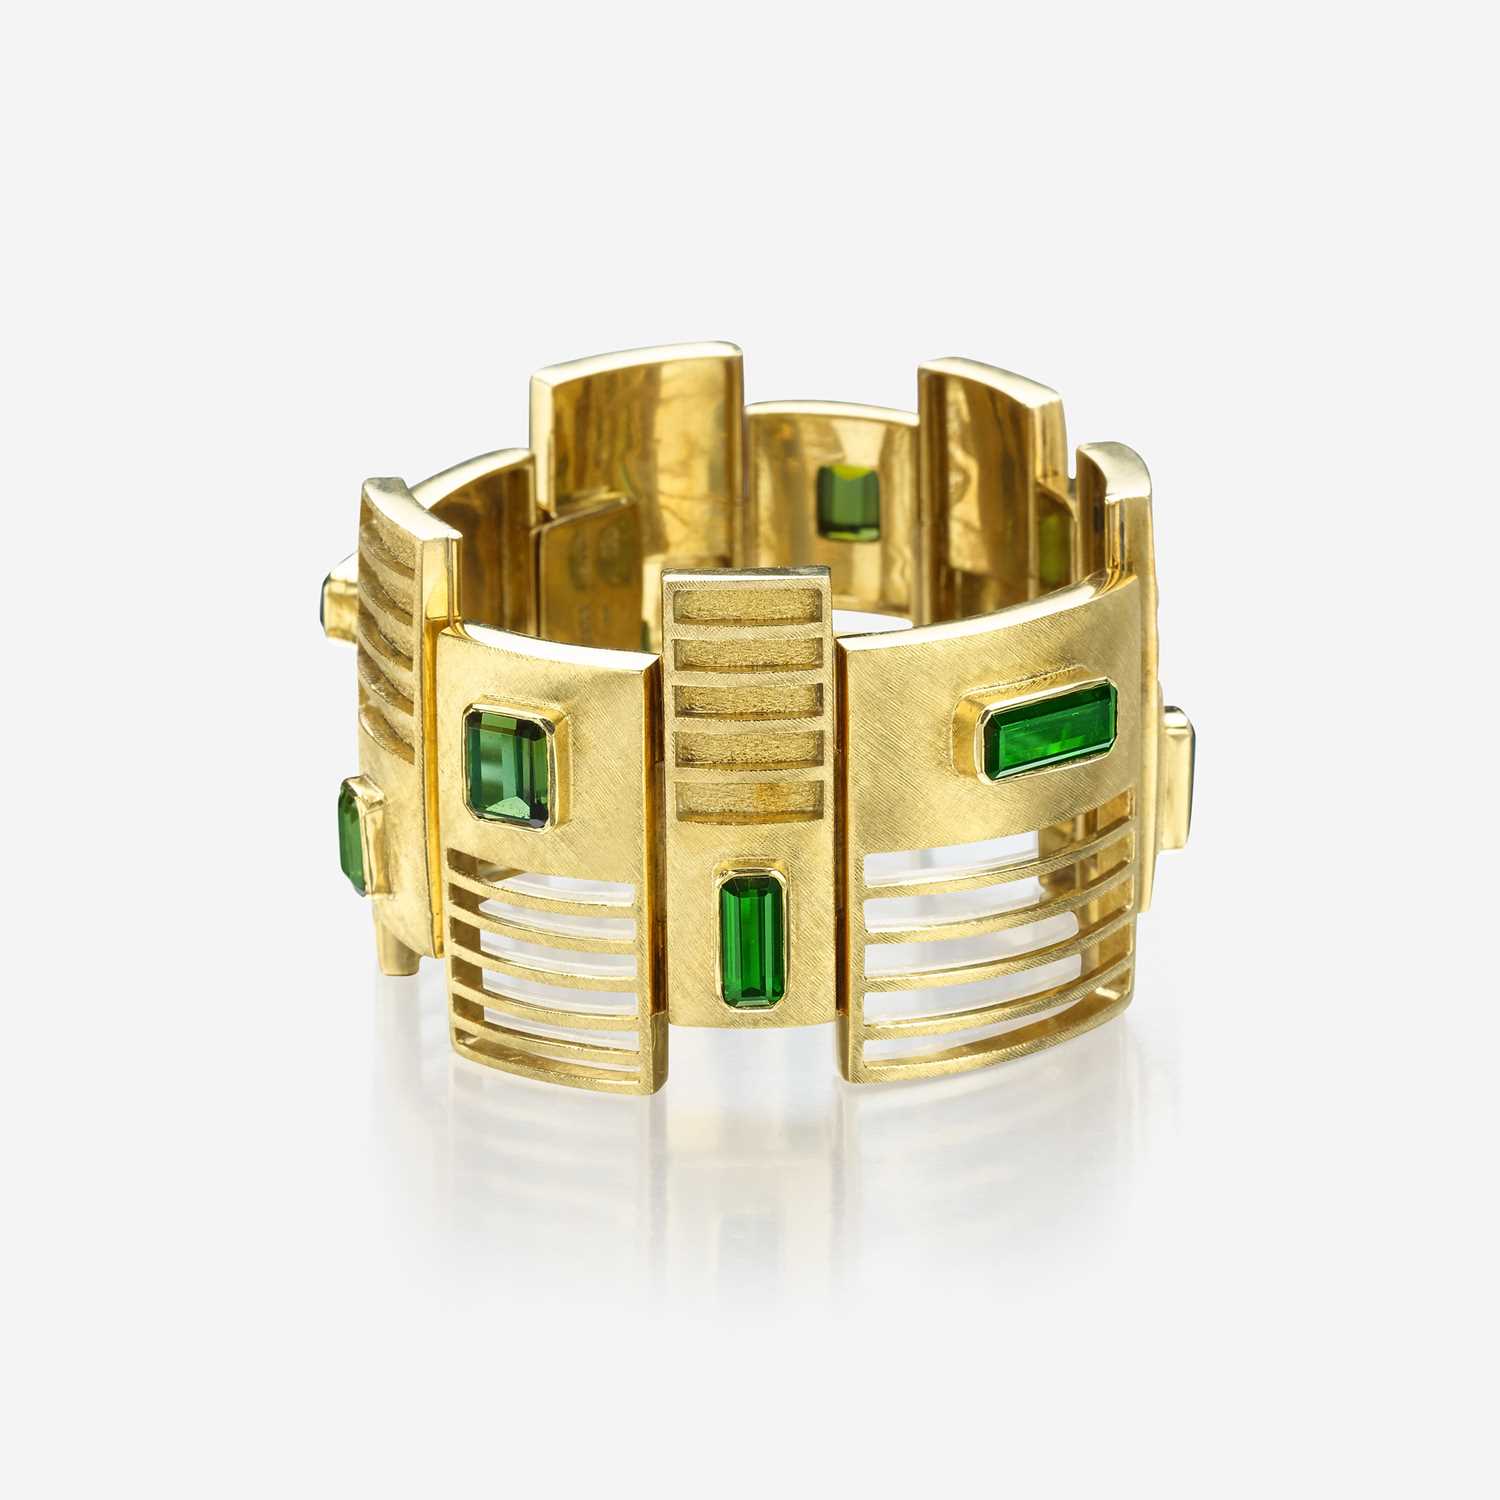 Lot 130 - An eighteen karat gold and green tourmaline bracelet, Burle Marx